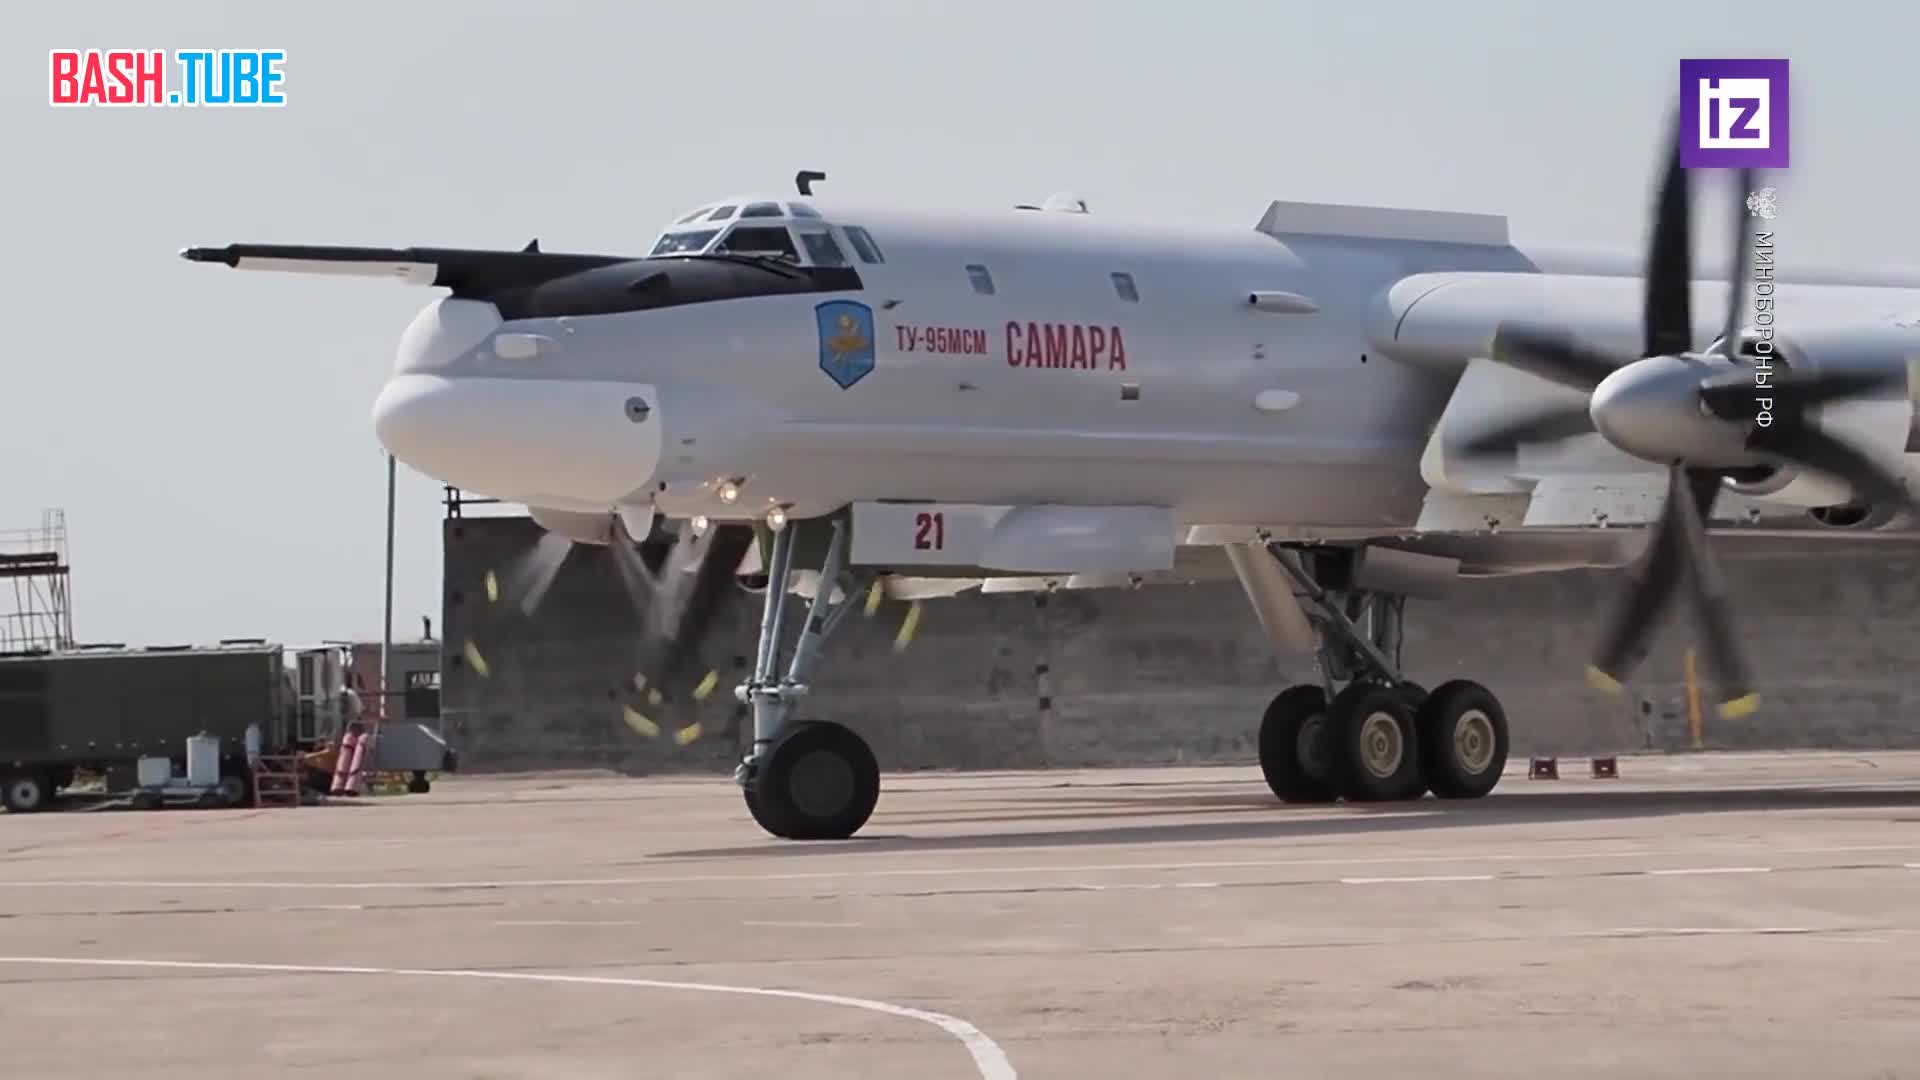  Обновленные ракетоносцы Ту-95МСМ и Ту-22МЗМ поступят в ВКС РФ в 2023 году